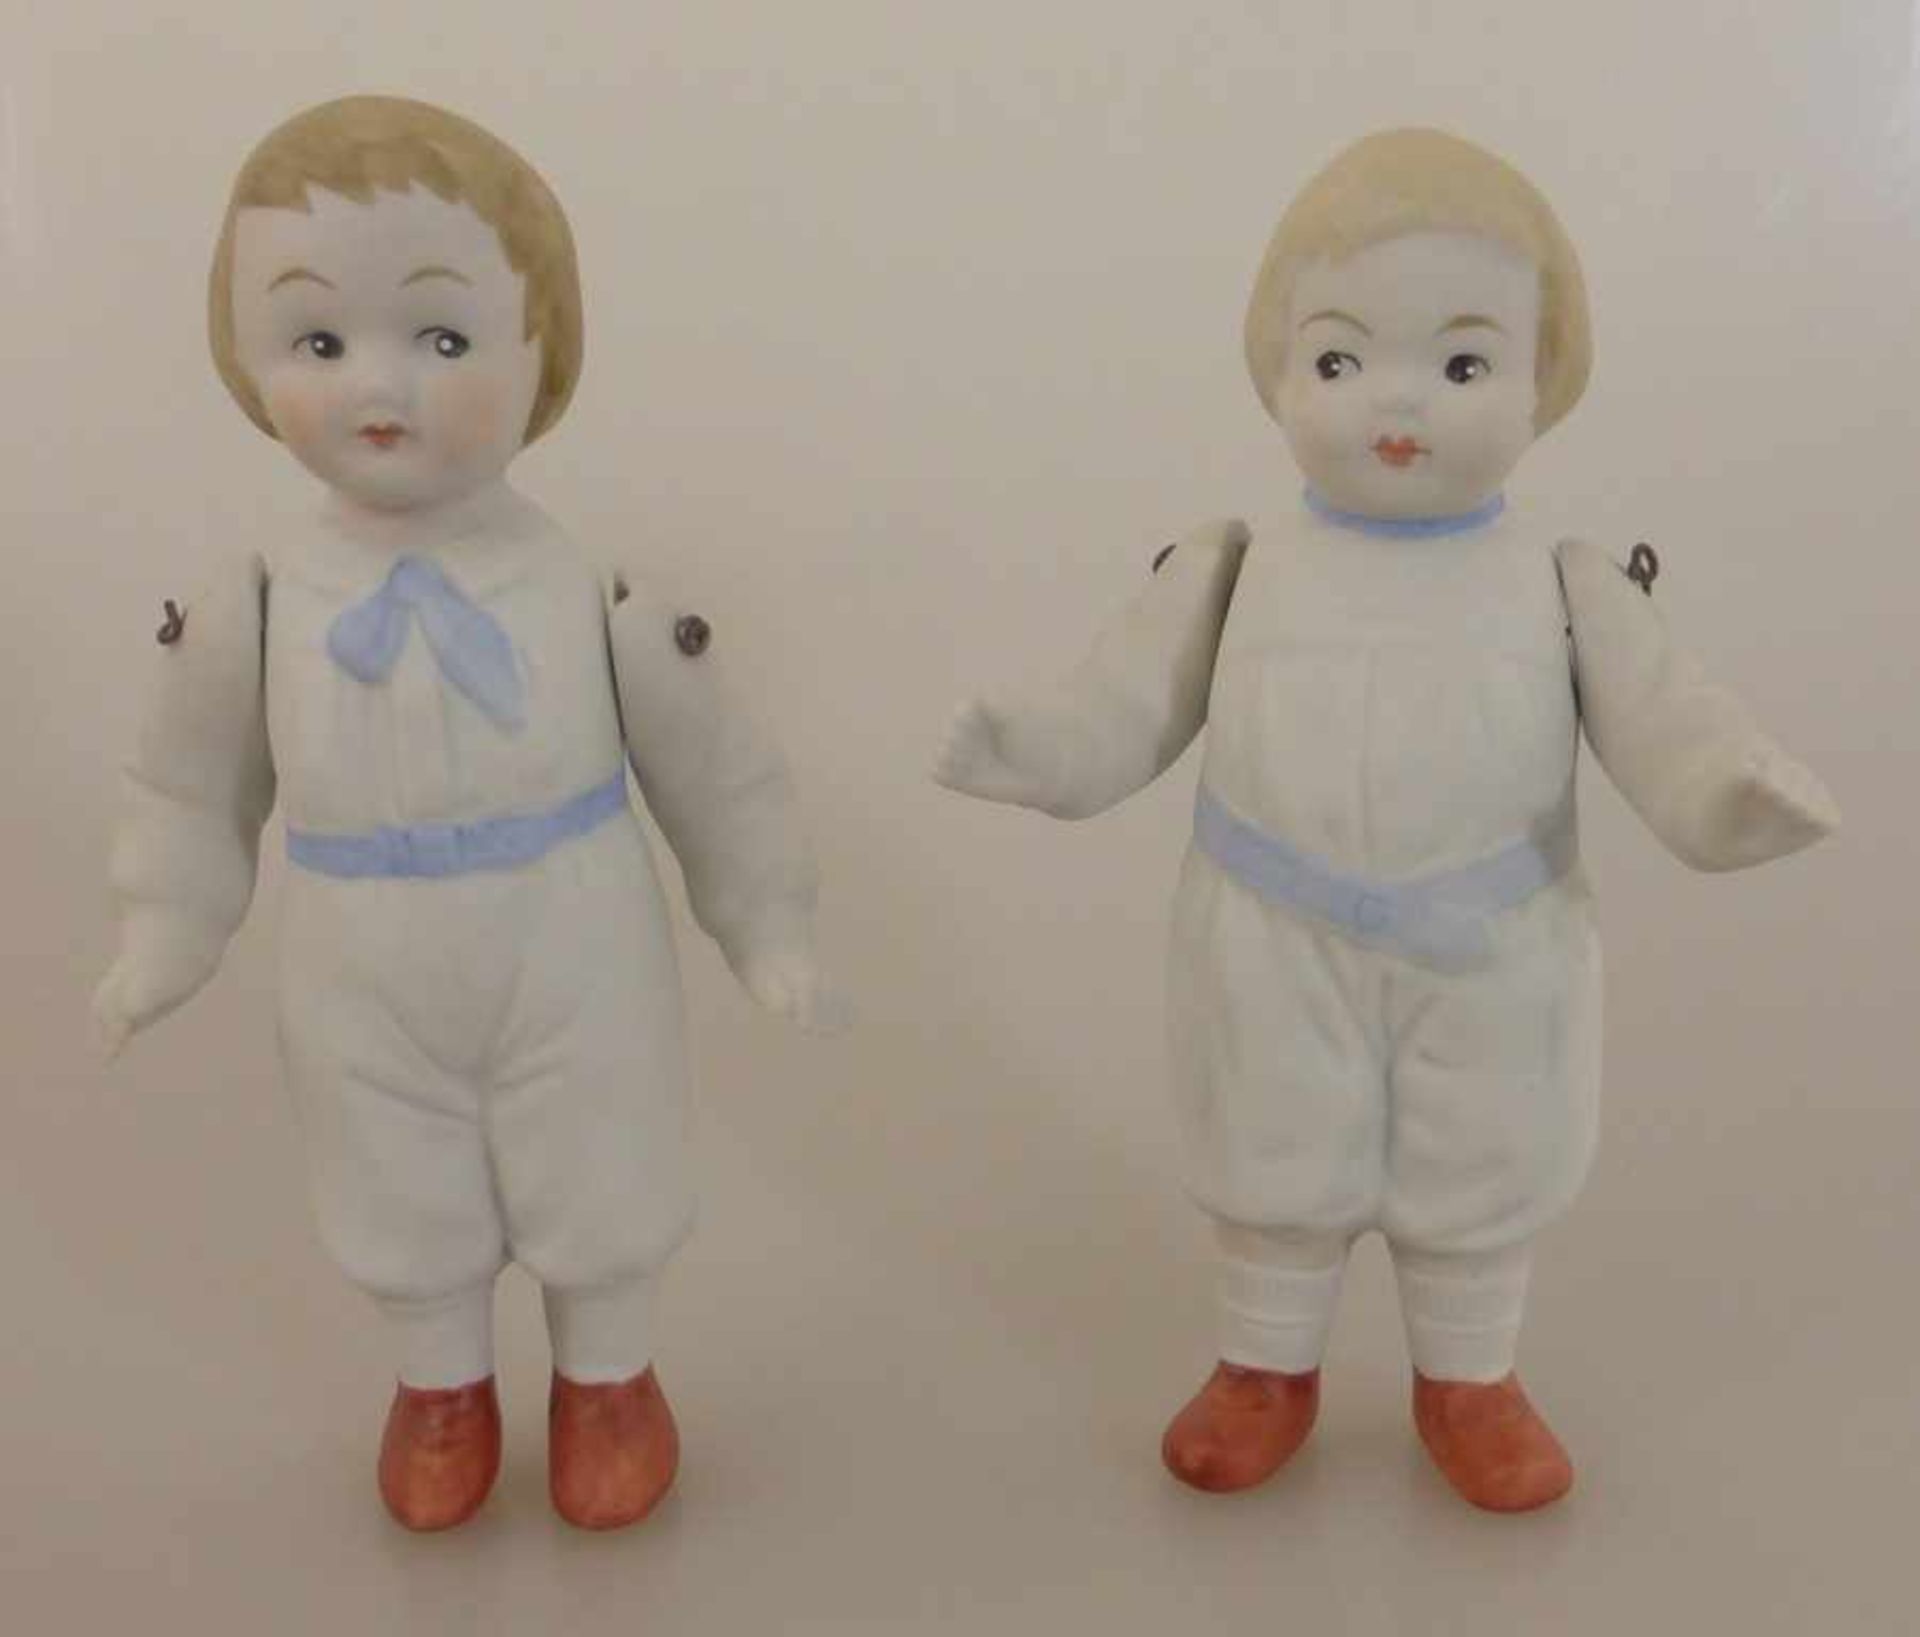 2 Puppen Bisquitporzellan, 20.Jh., bewegliche Arme, h. 12,5cm, eine Puppe am Arm min. best.